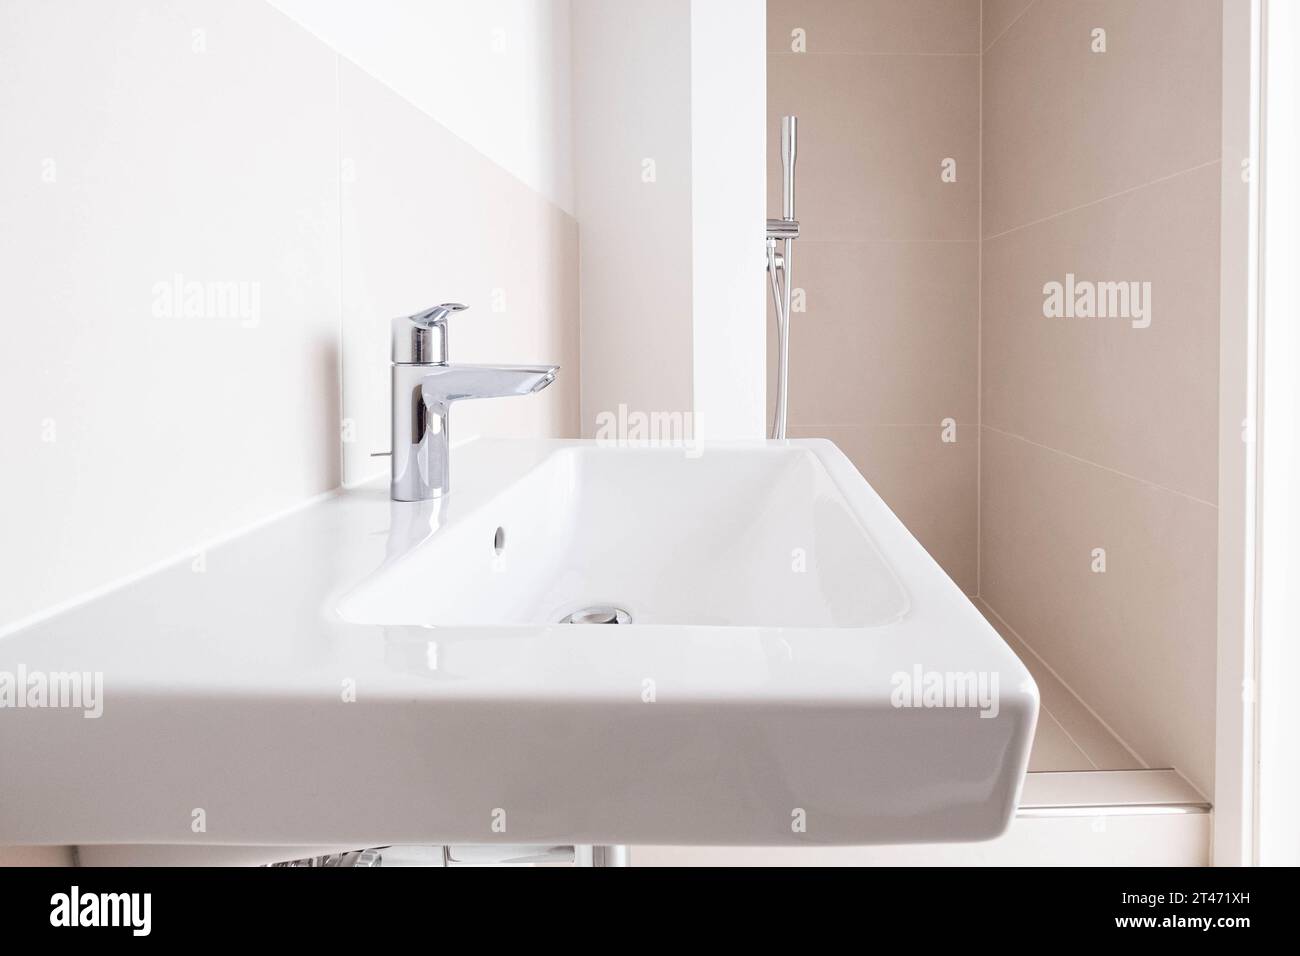 lavabo, robinet gros plan dans la nouvelle salle de bain avec douche Banque D'Images